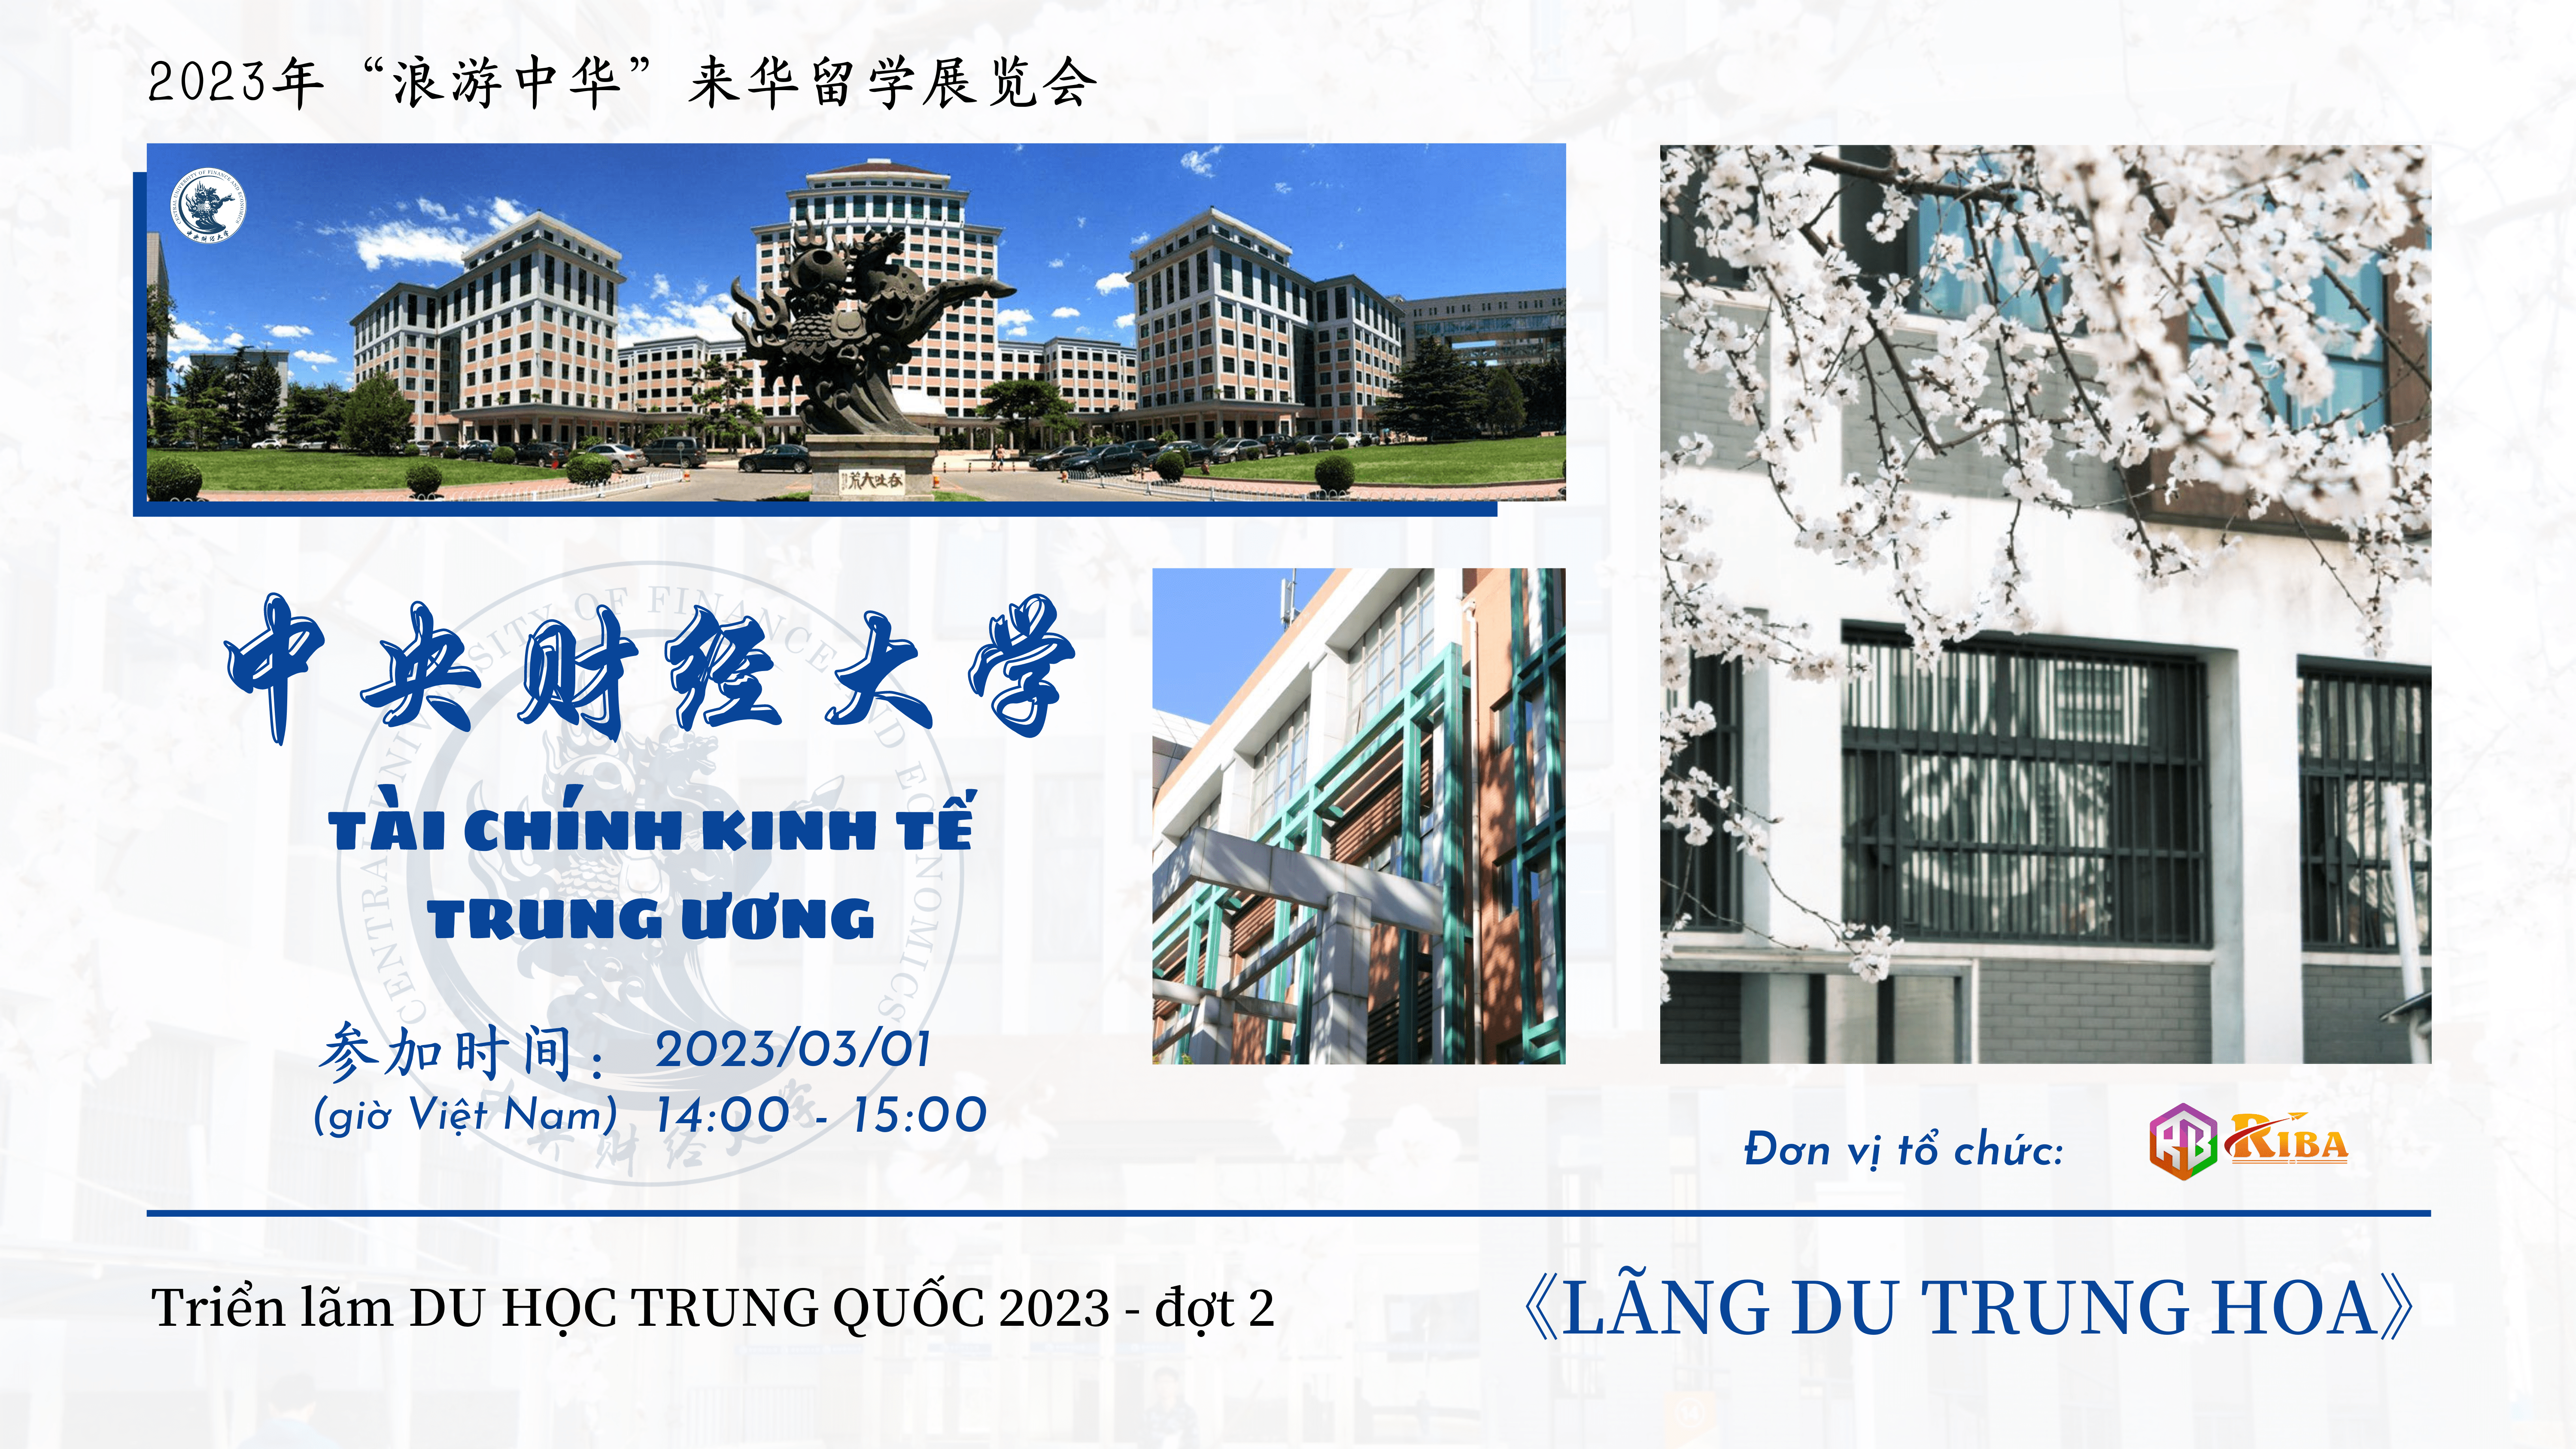 dai-hoc-tai-chinh-va-kinh-te-trung-uong-lang-du-trung-hoa-2023